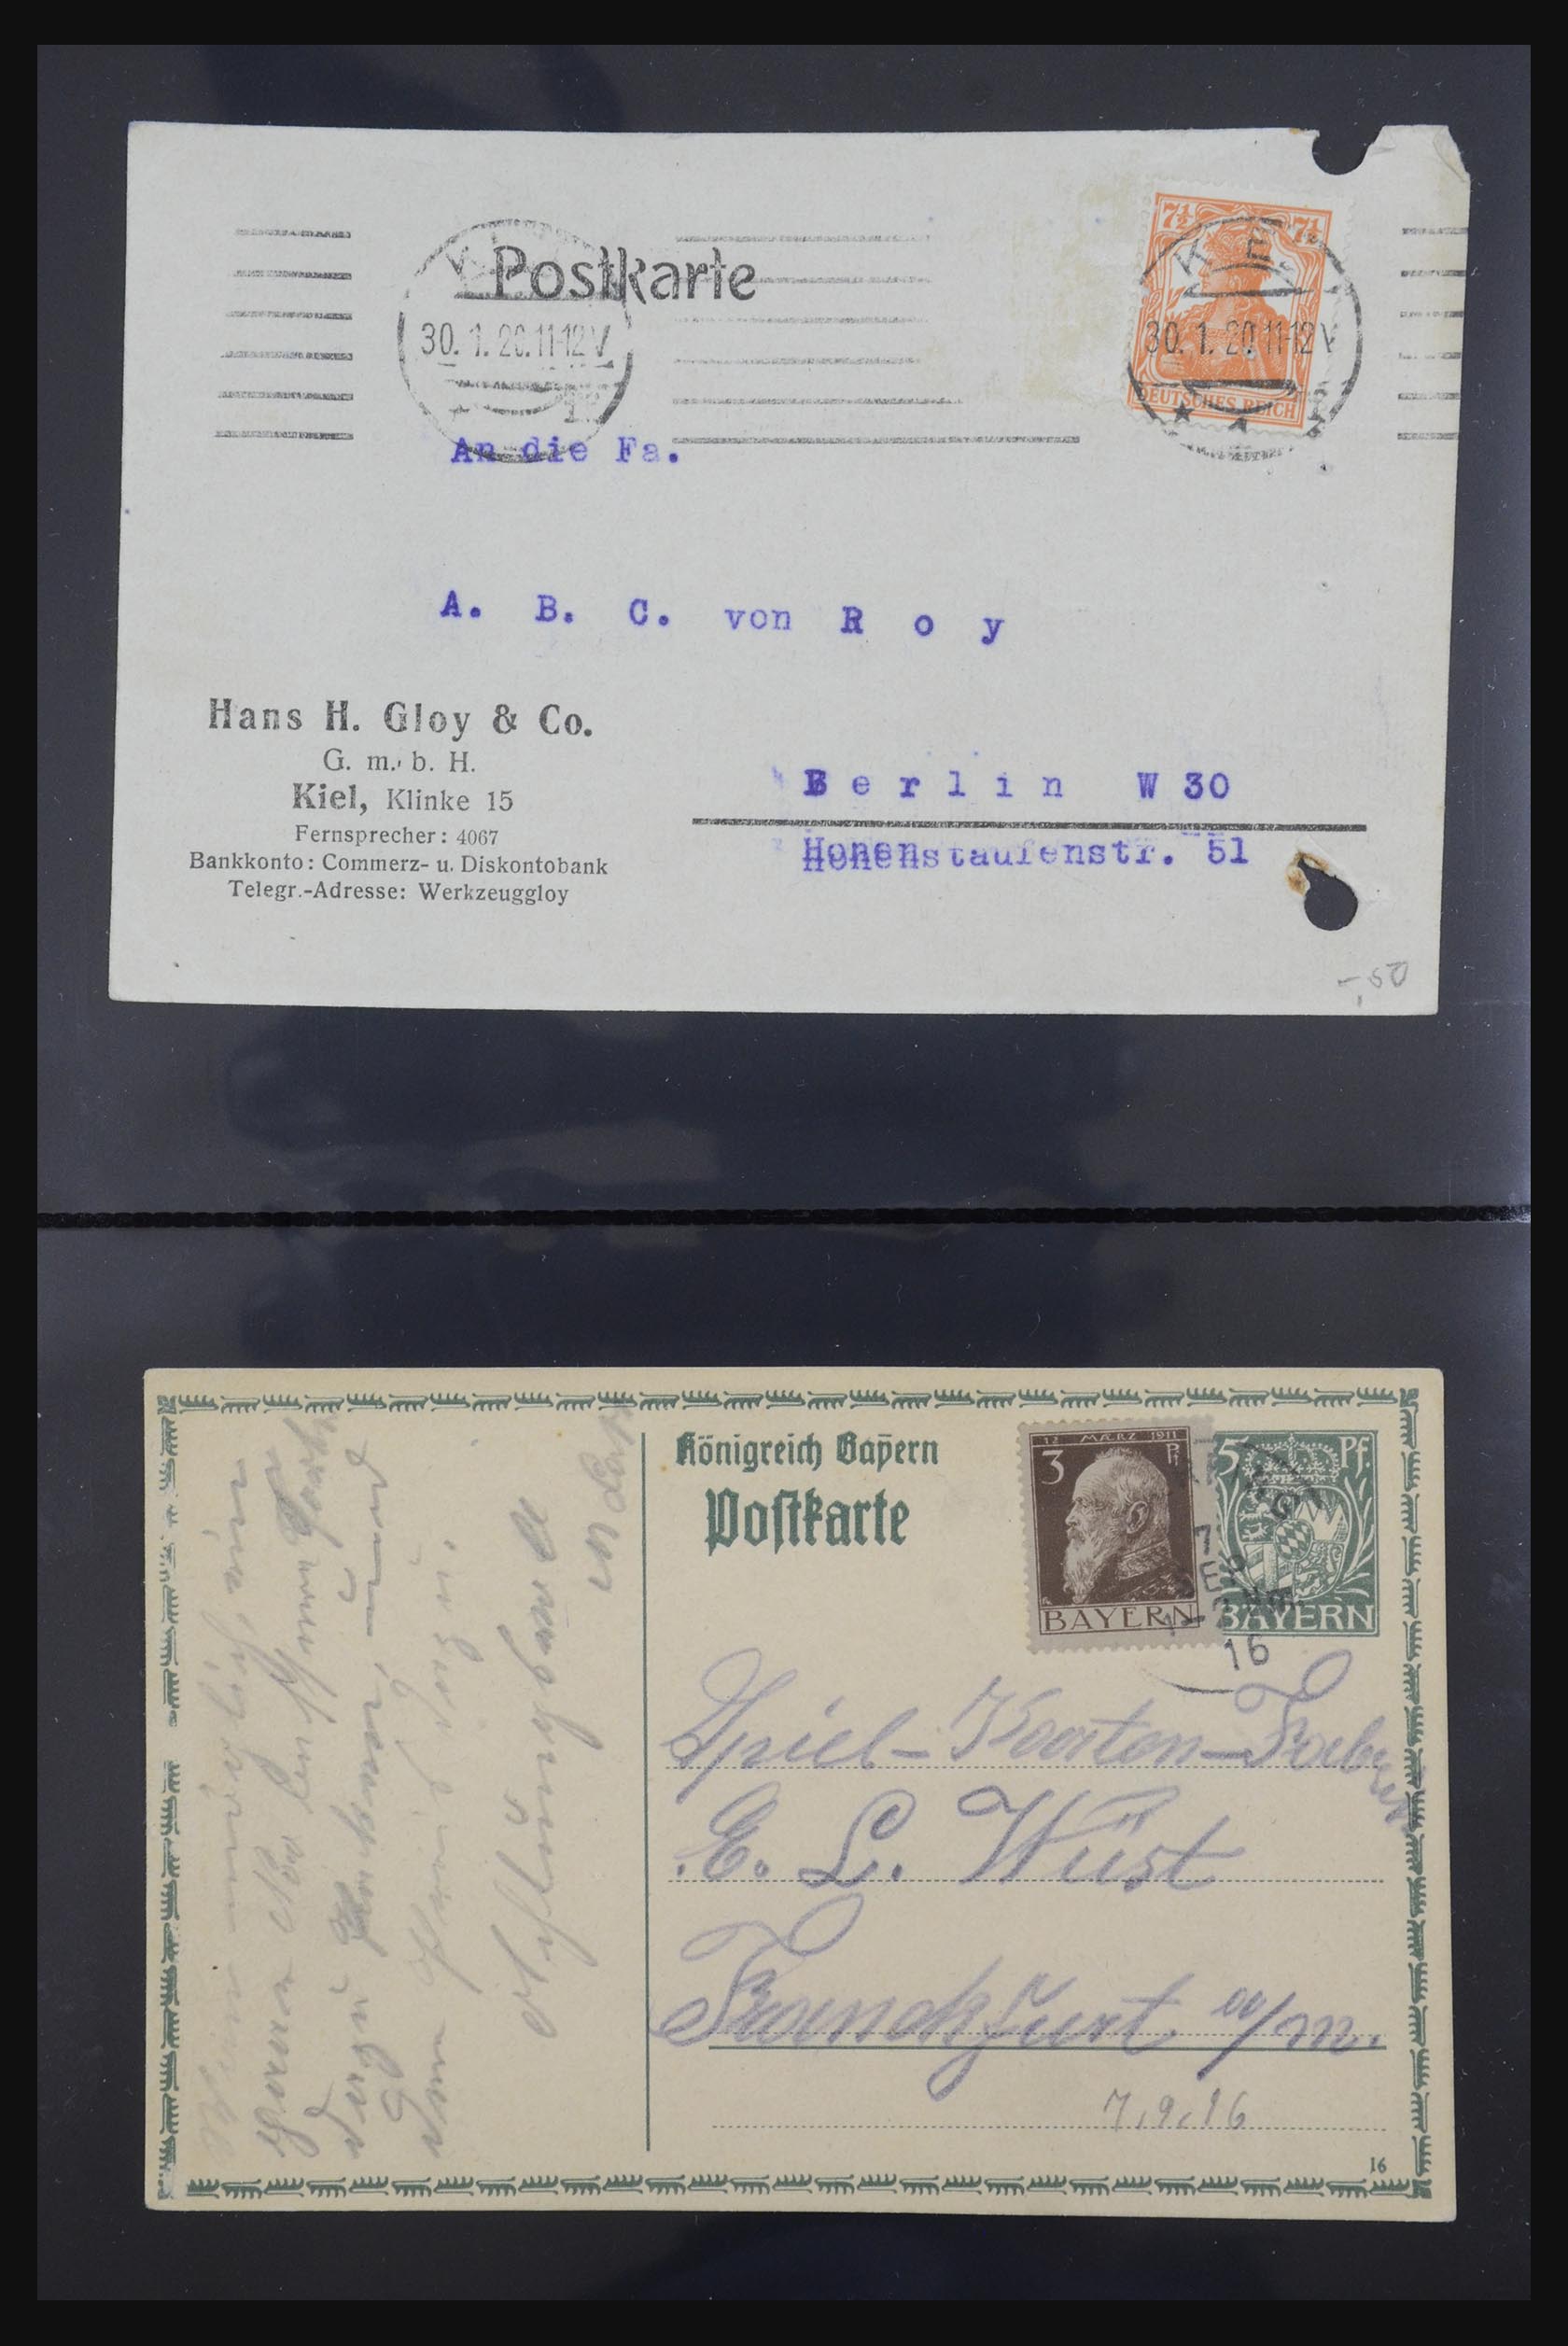 31952 428 - 31952 German Reich cards.